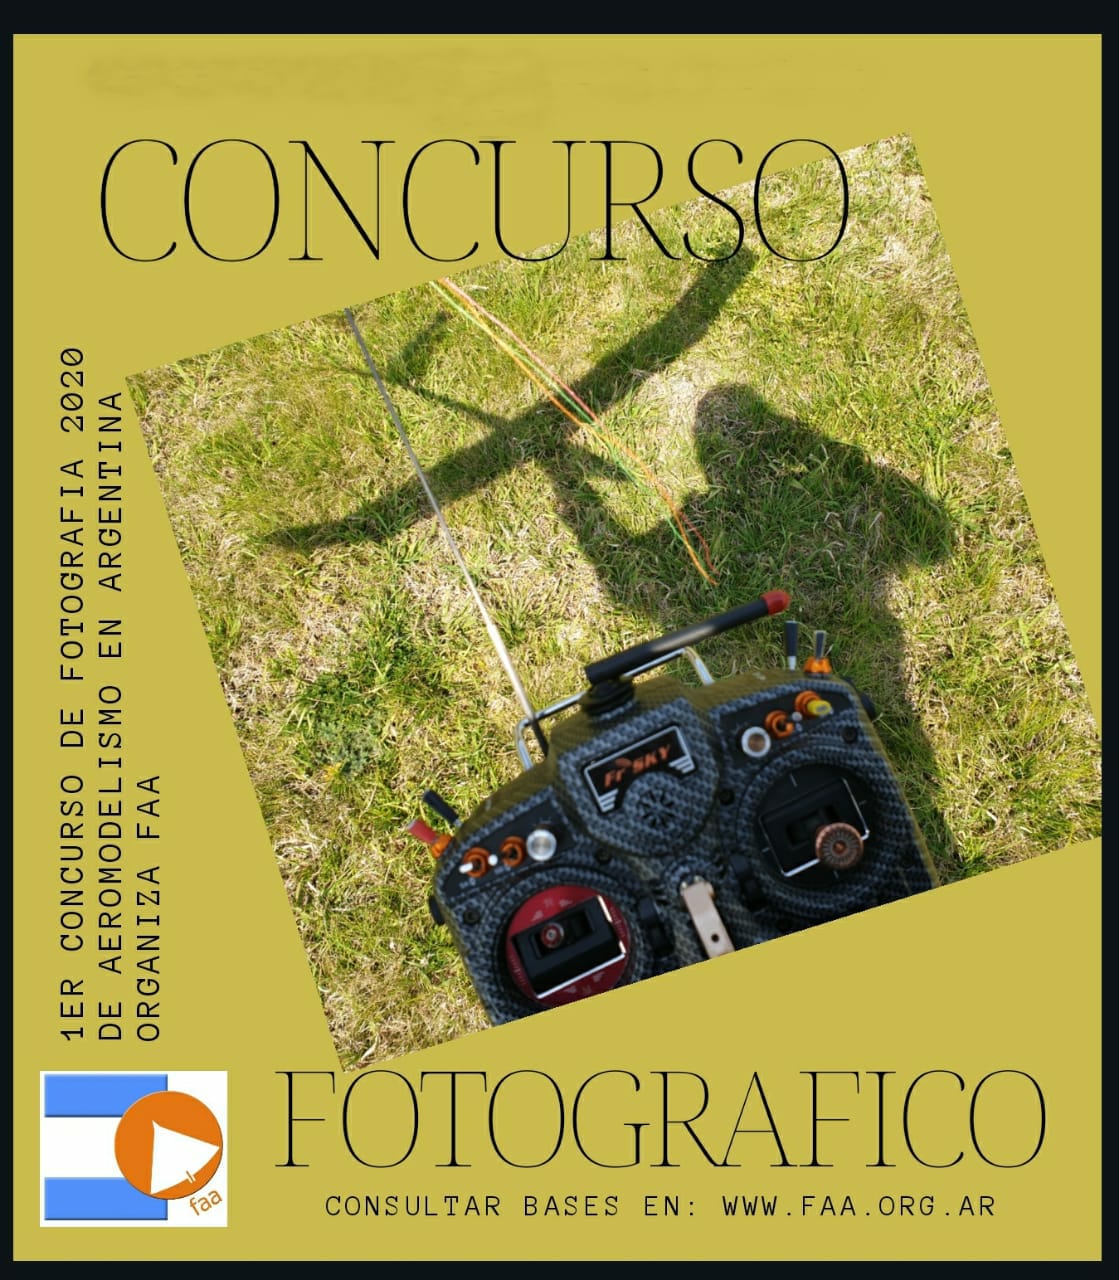 1° Concurso de Fotografía 2020 “Aeromodelismo en Argentina” Organizado por la FAA